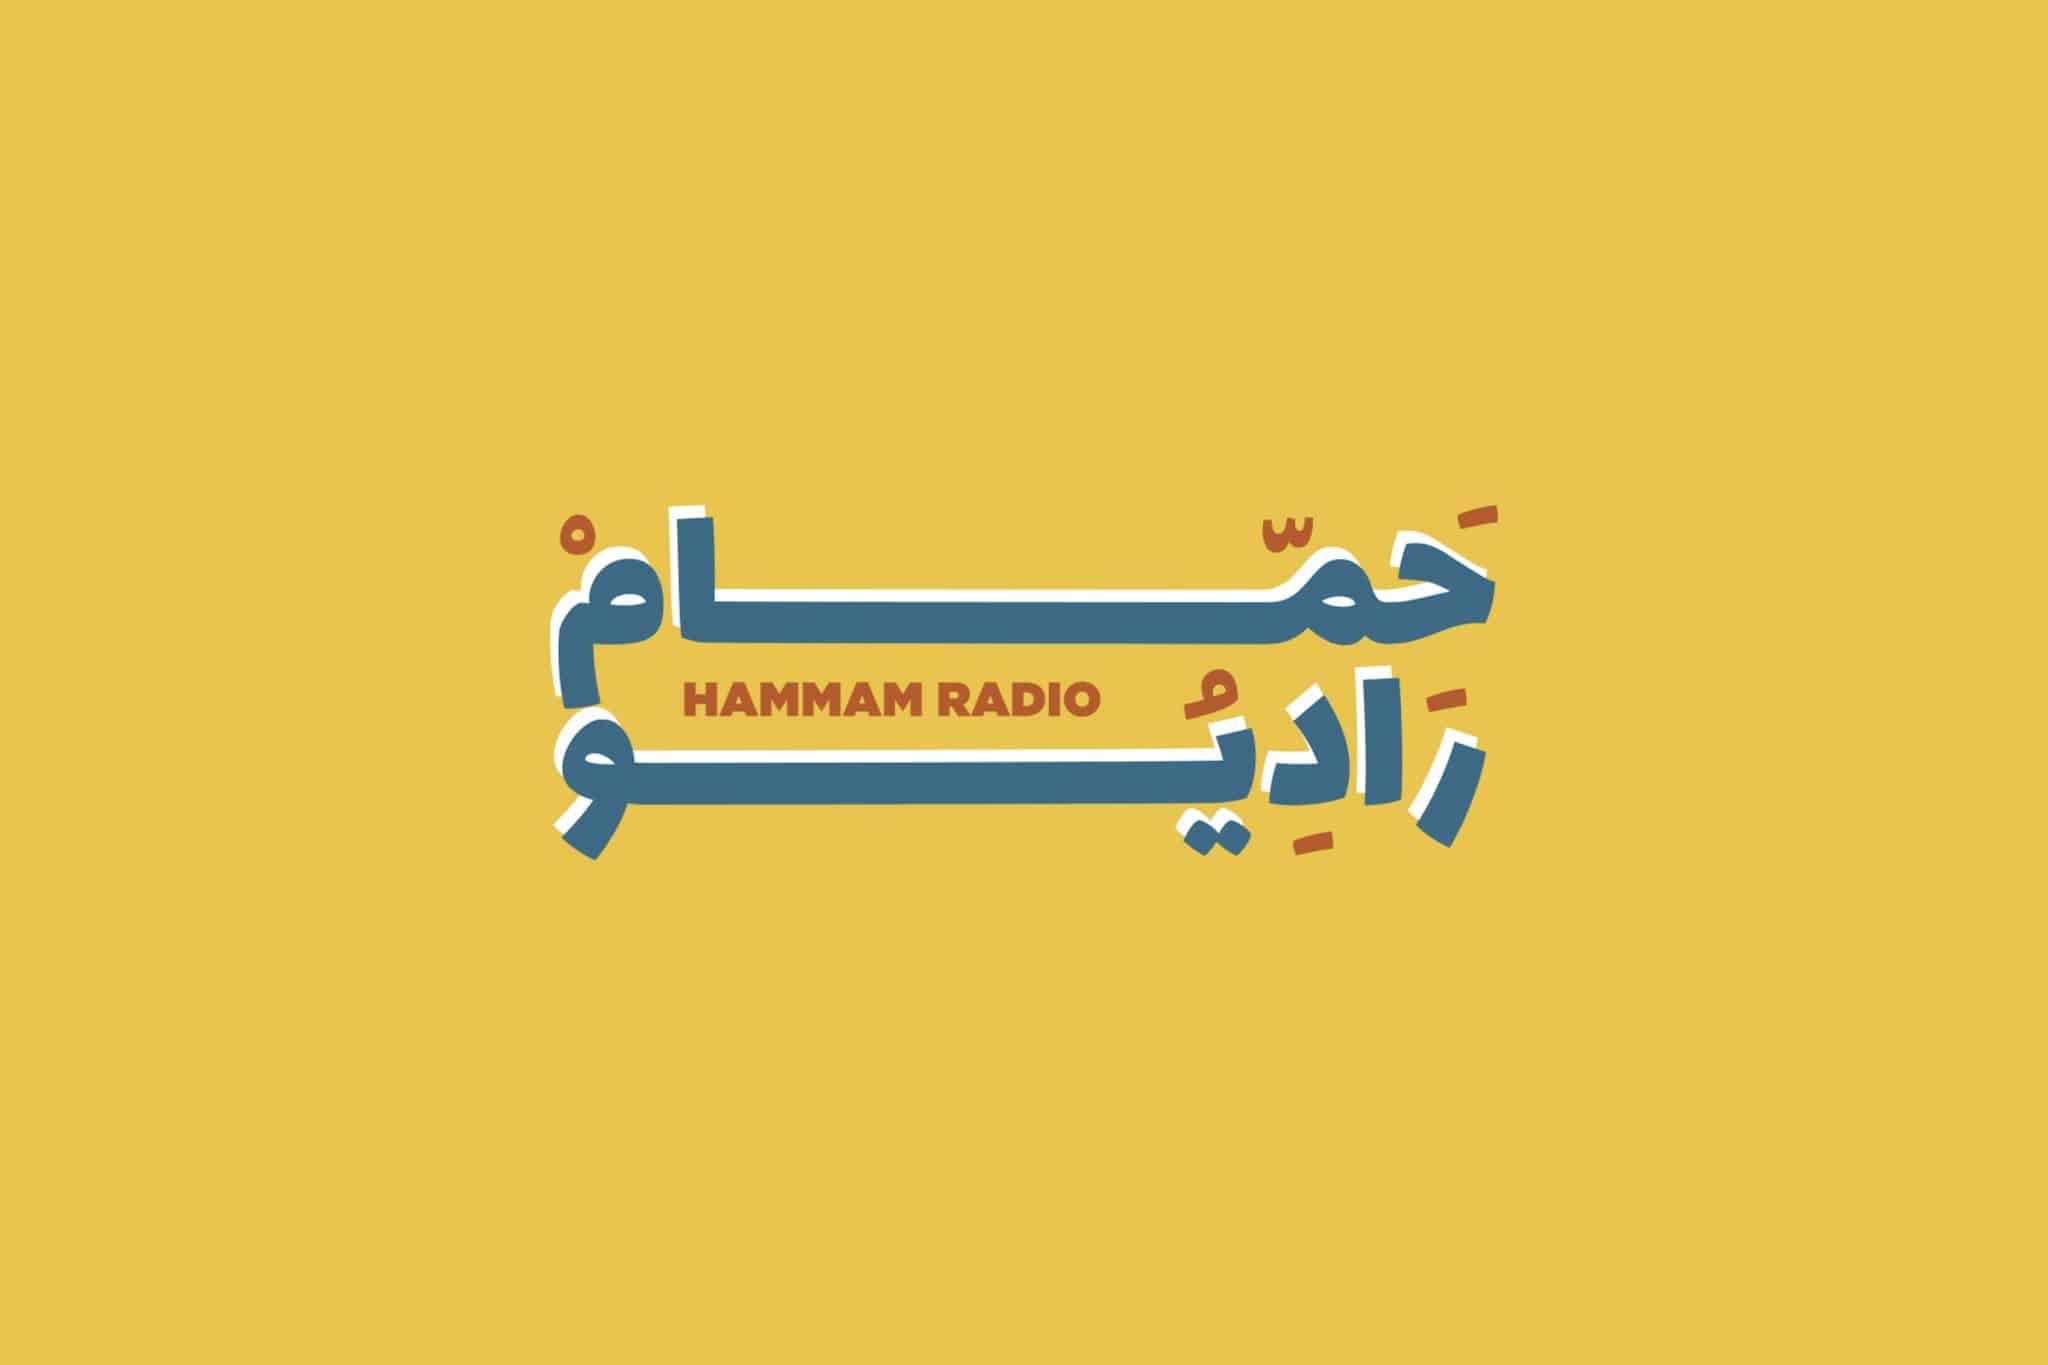 Hammam radio logo misfits digital